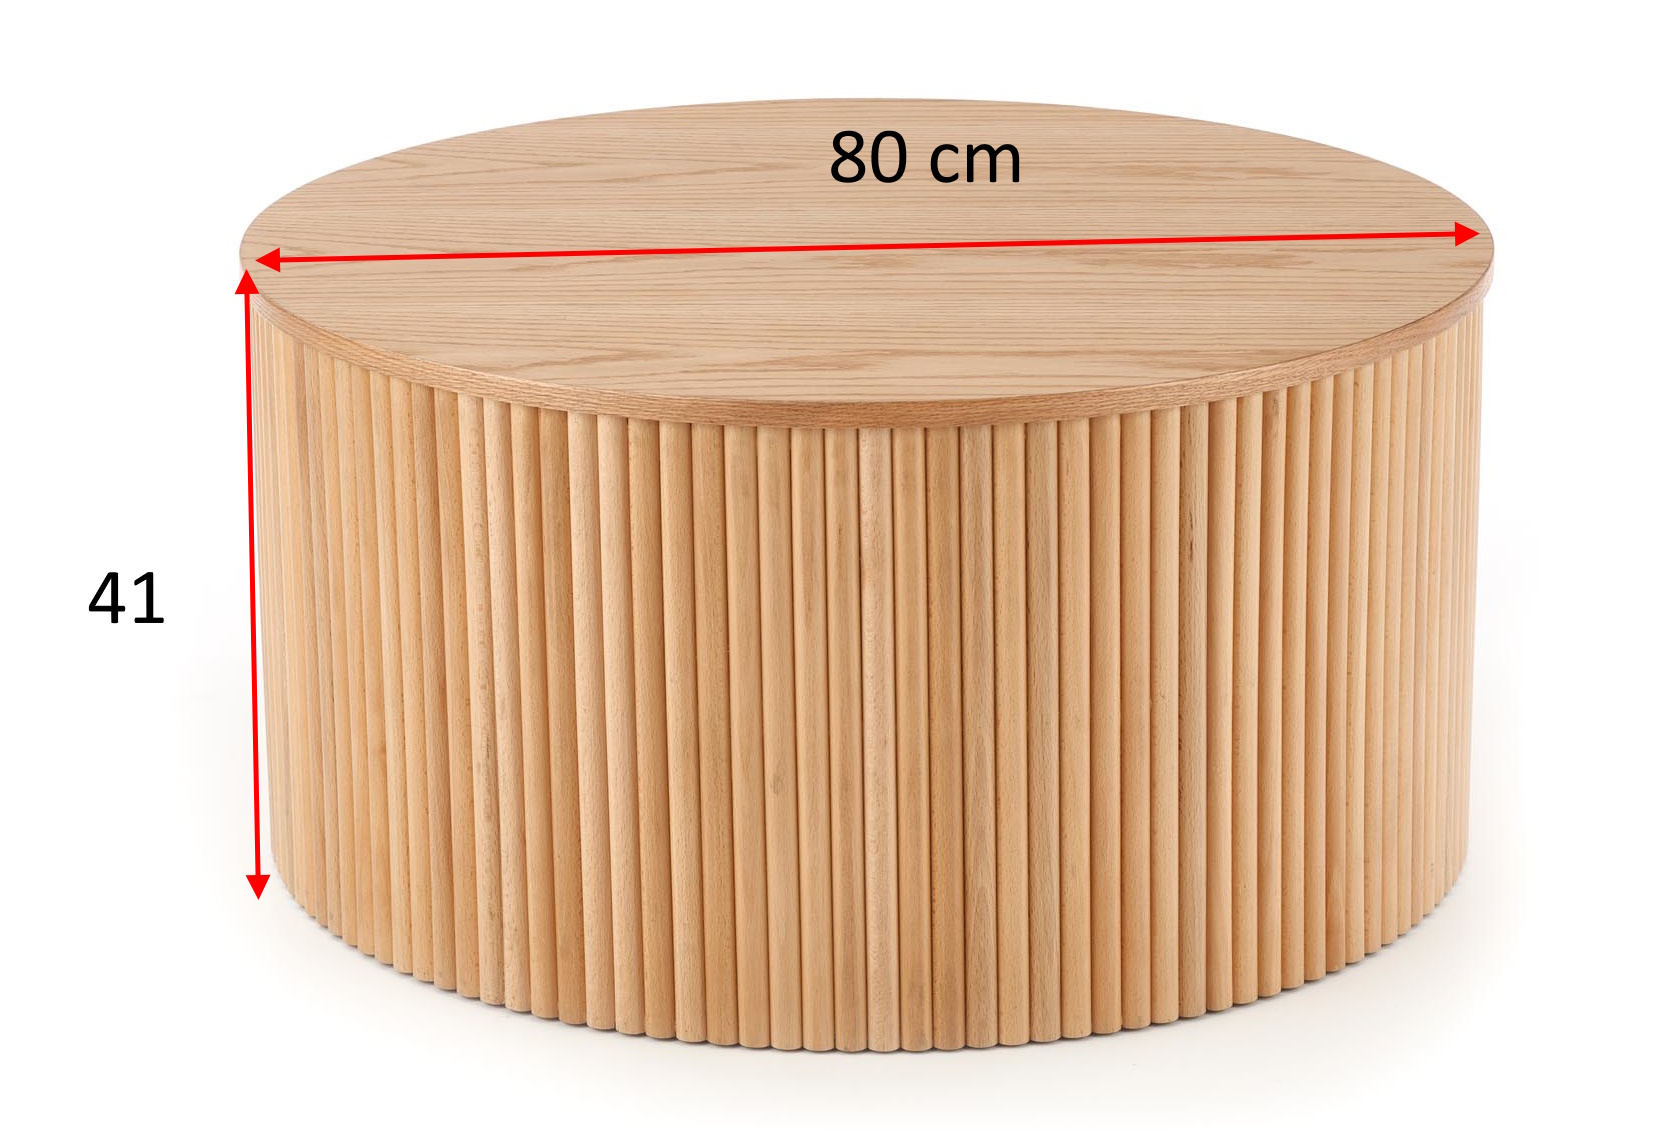 okrągły stolik kawowy 80 cm Elegant